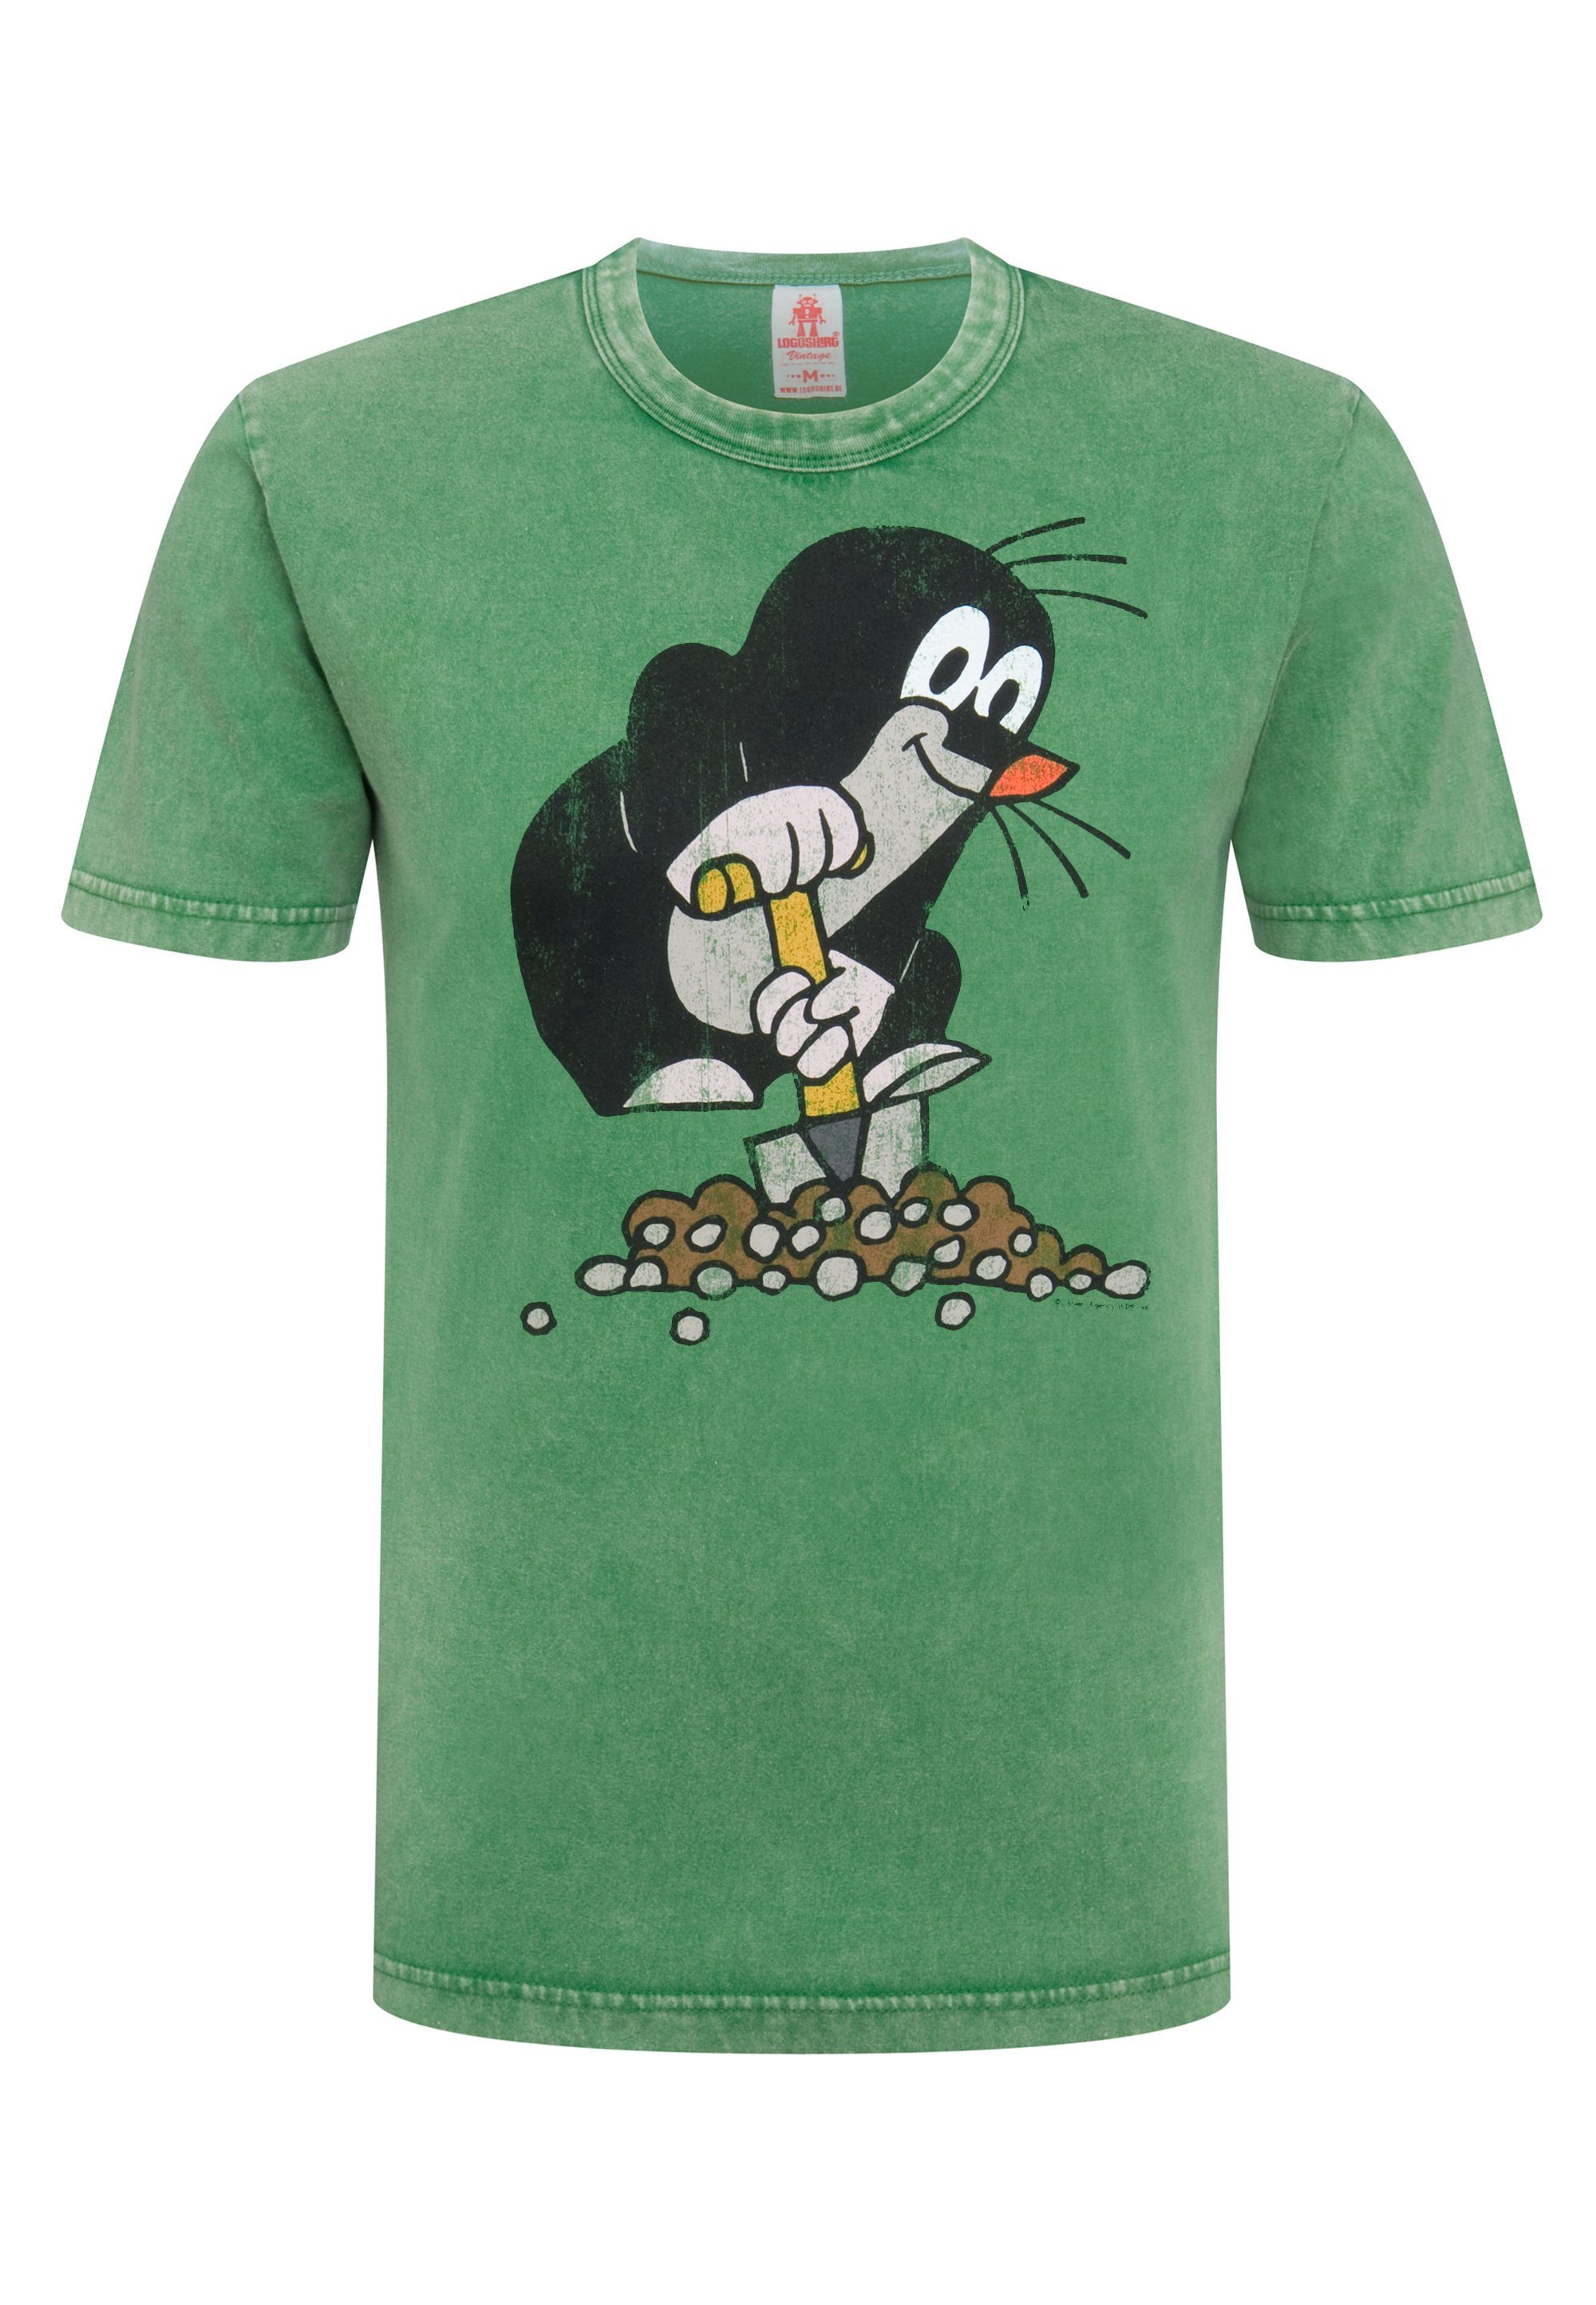 LOGOSHIRT T-Shirt Der kleine Maulwurf grün lizenziertem Print mit